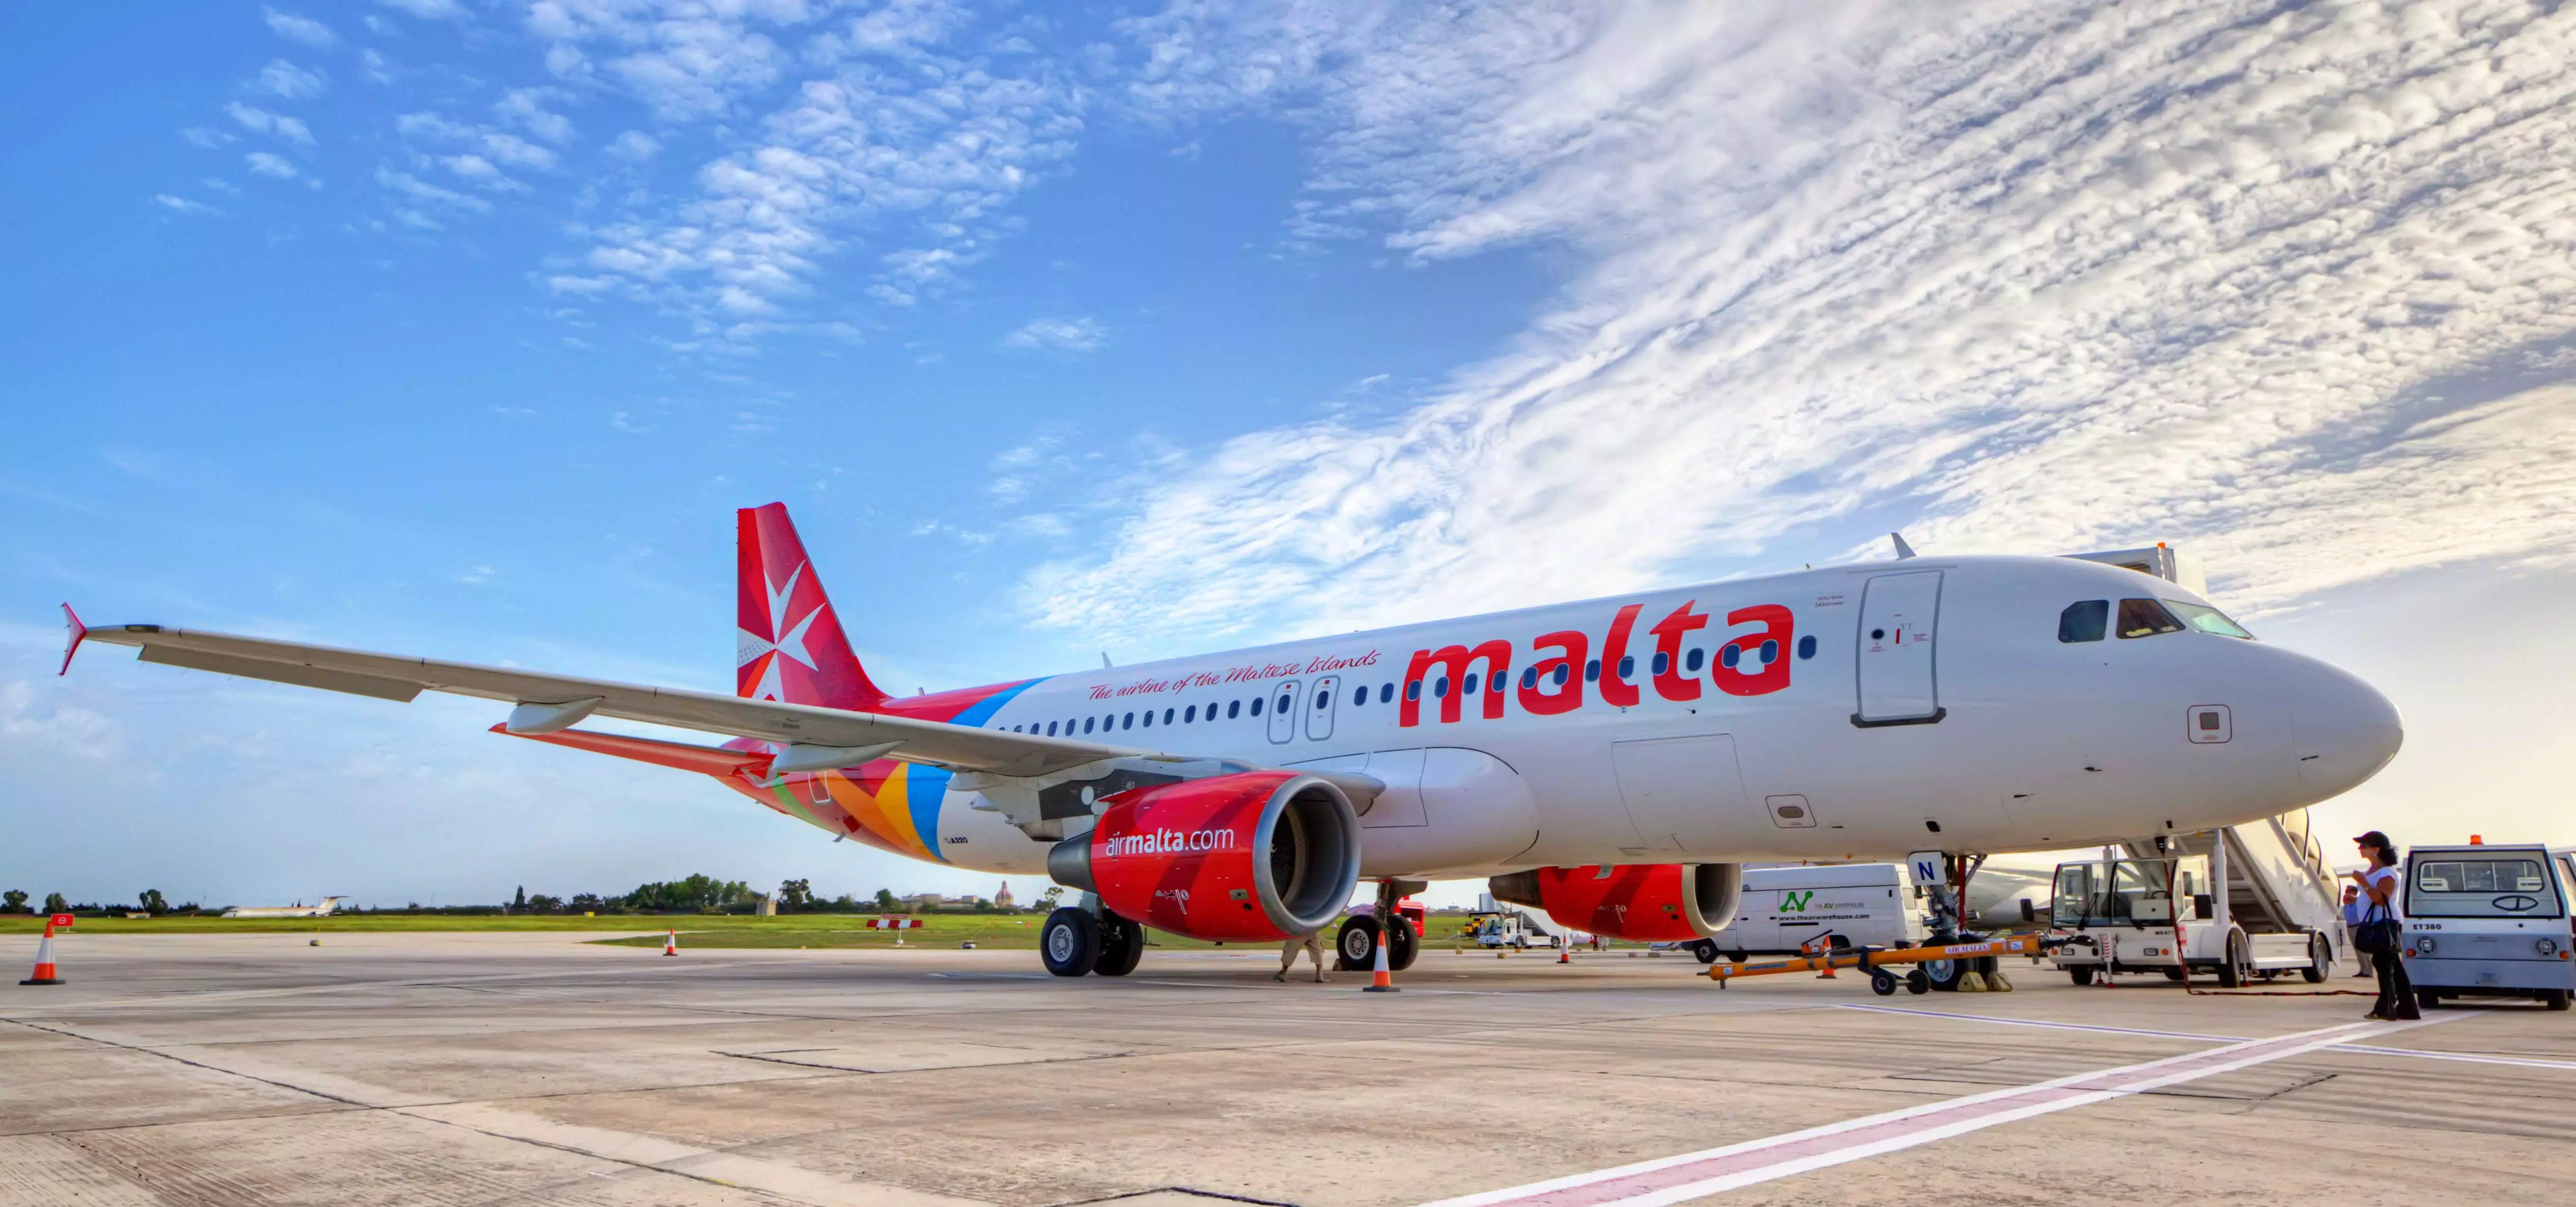 Air malta - отзывы пассажиров 2017-2018 про авиакомпанию эйр мальта